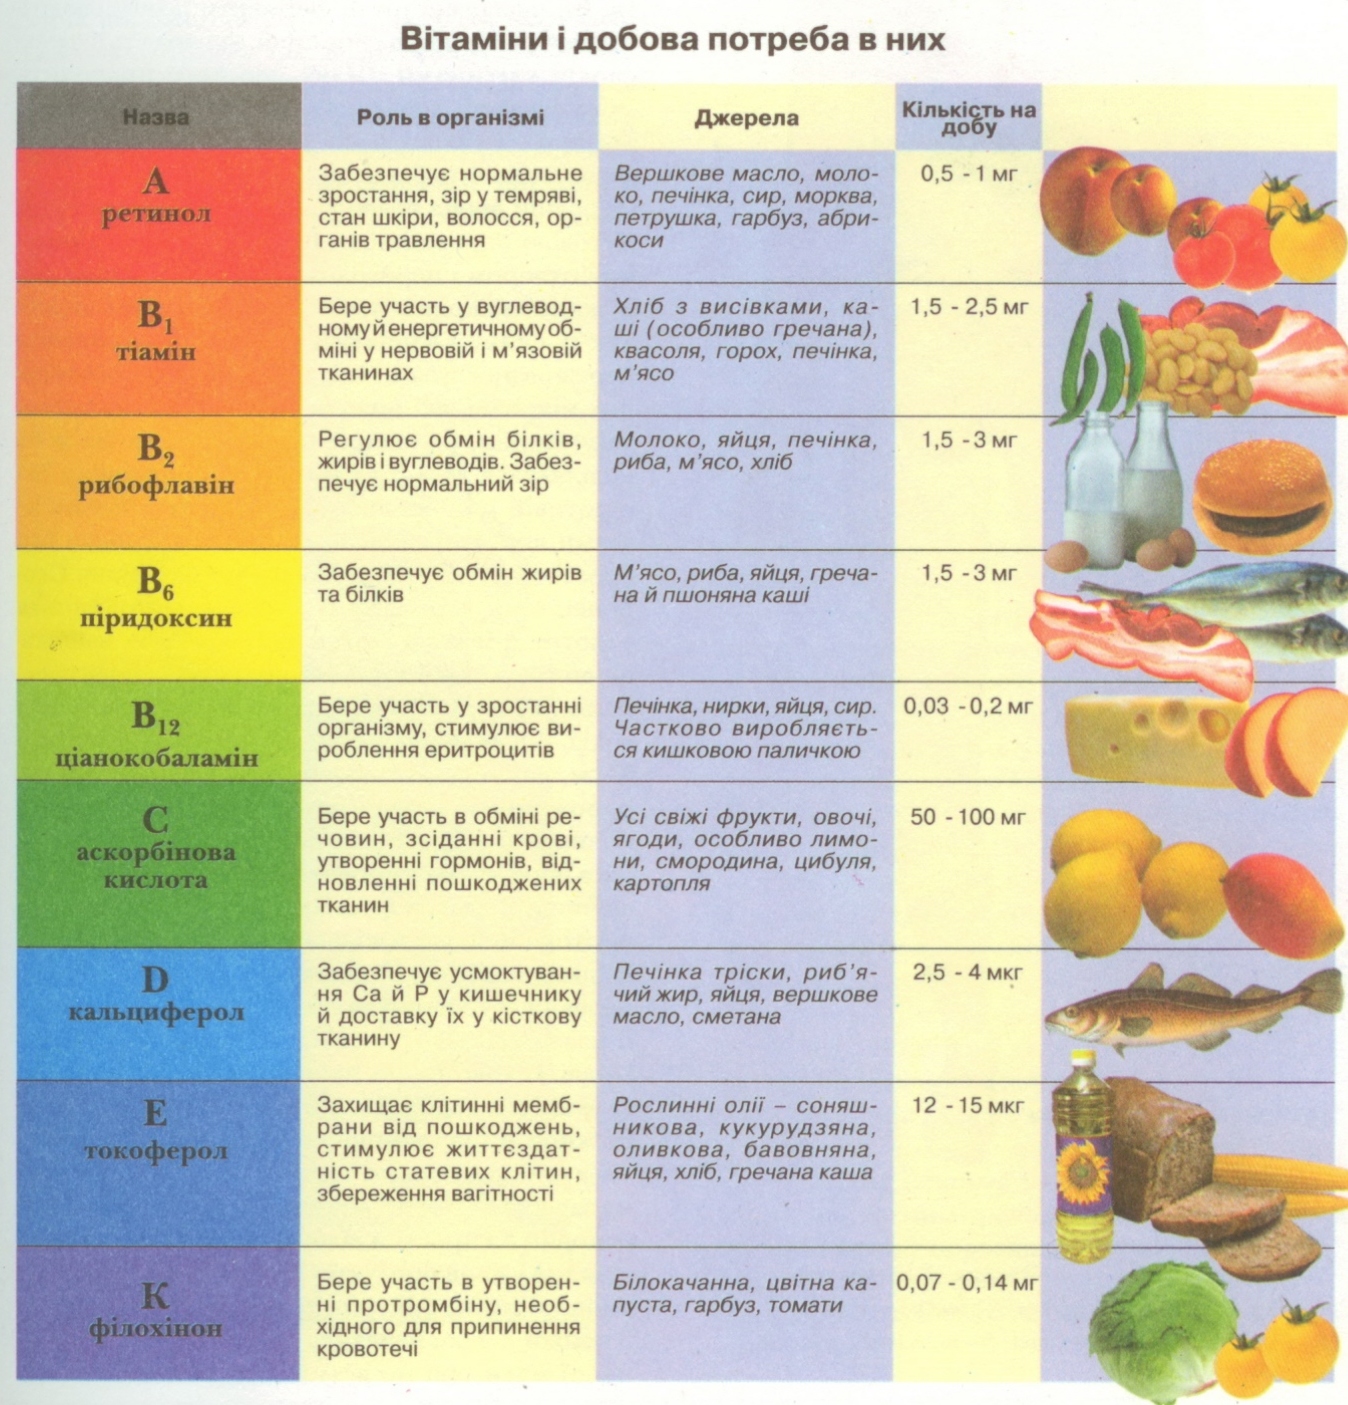 Таблица витаминов в организме человека. Витамины таблица. Тамблица АРОО витамины. Витамины и их заболевания таблица. Таблица витамины продукты заболевания.